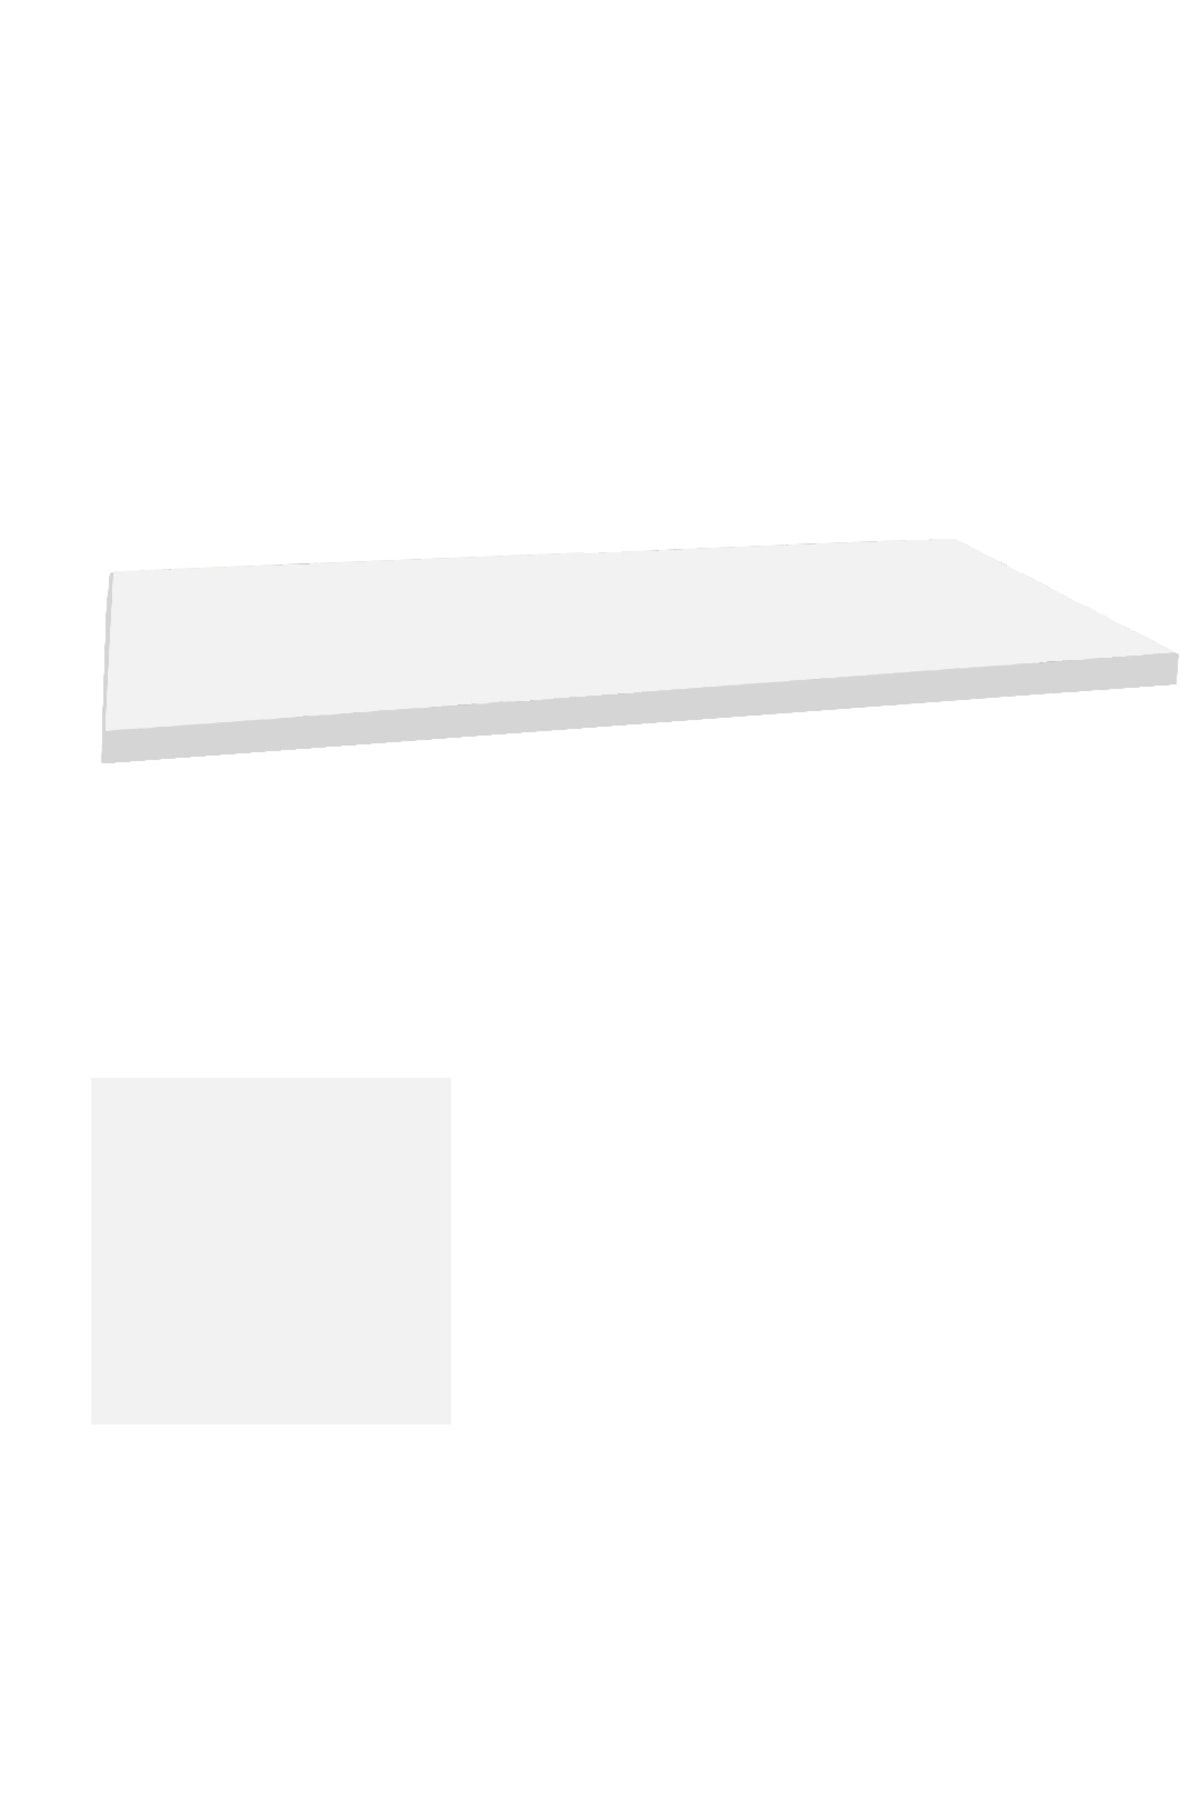 Dockers Laminat Masa Tablası (80x150) - Beyaz